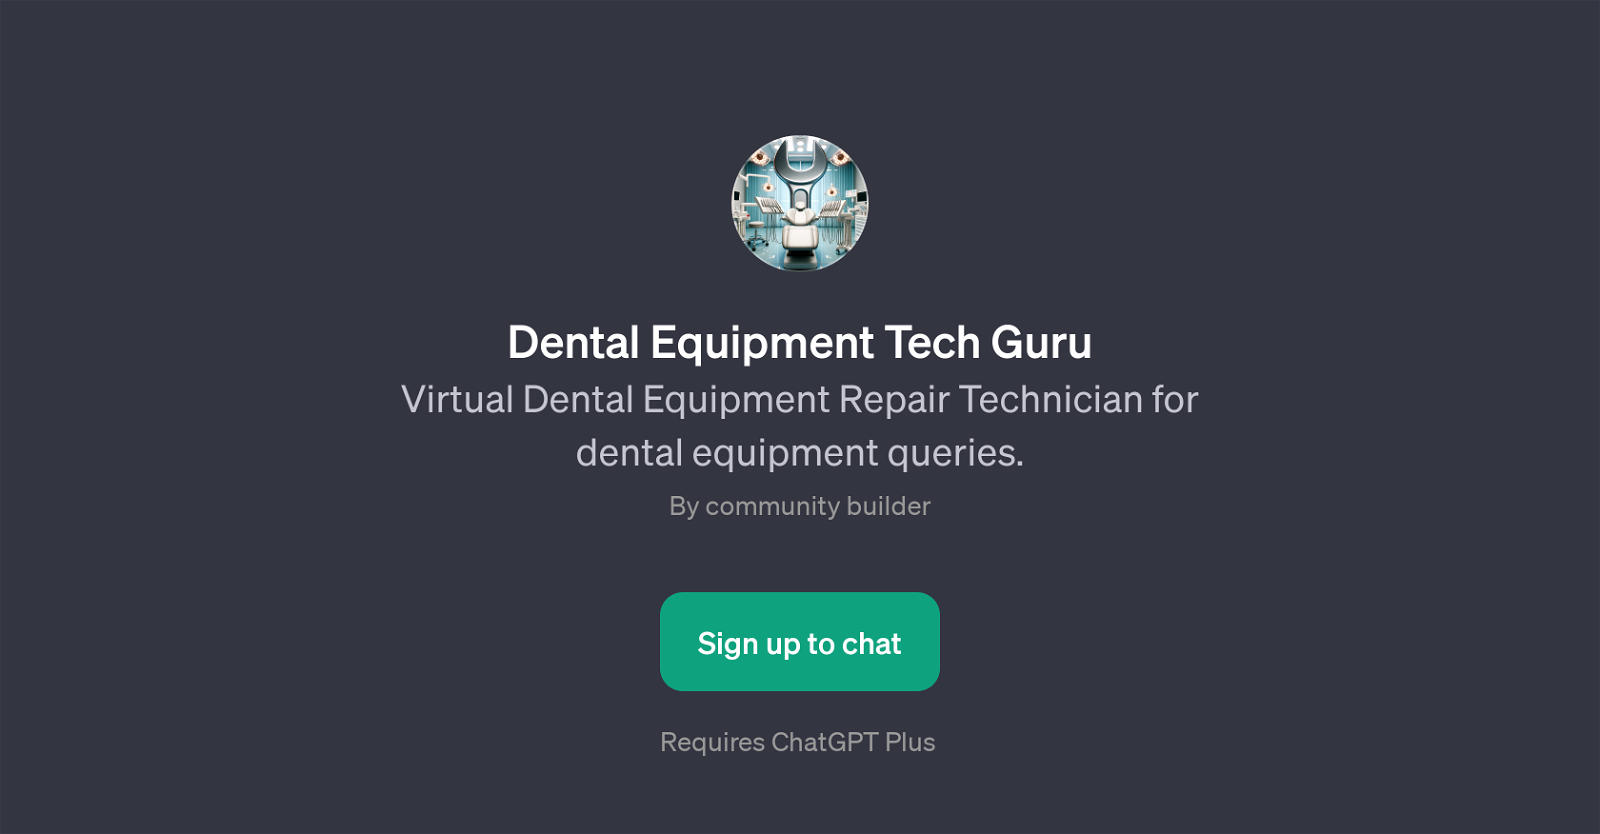 Dental Equipment Tech Guru website